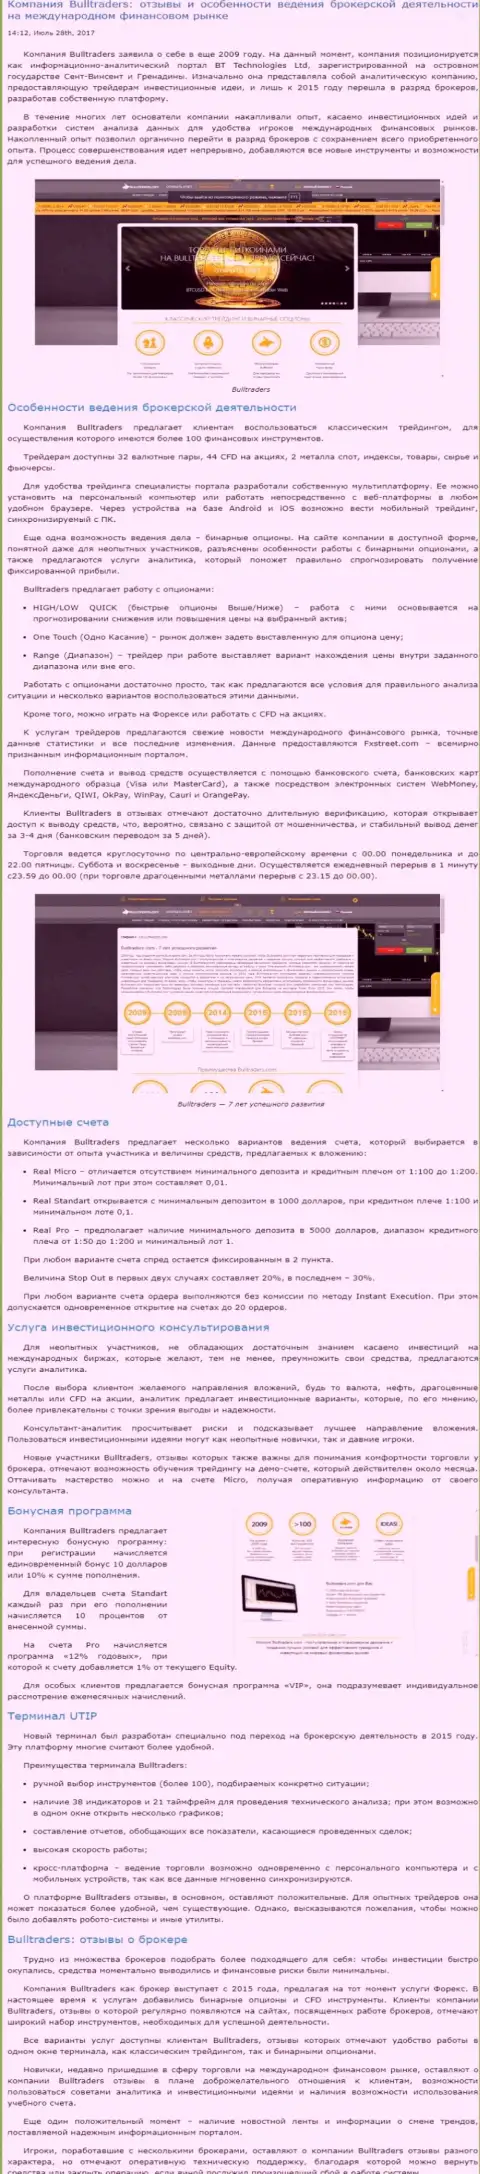 Обзор условий торгов FOREX брокерской компании BullTraders Com на мировой финансовой торговой площадке Форекс на интернет-портале Besuccess Ru